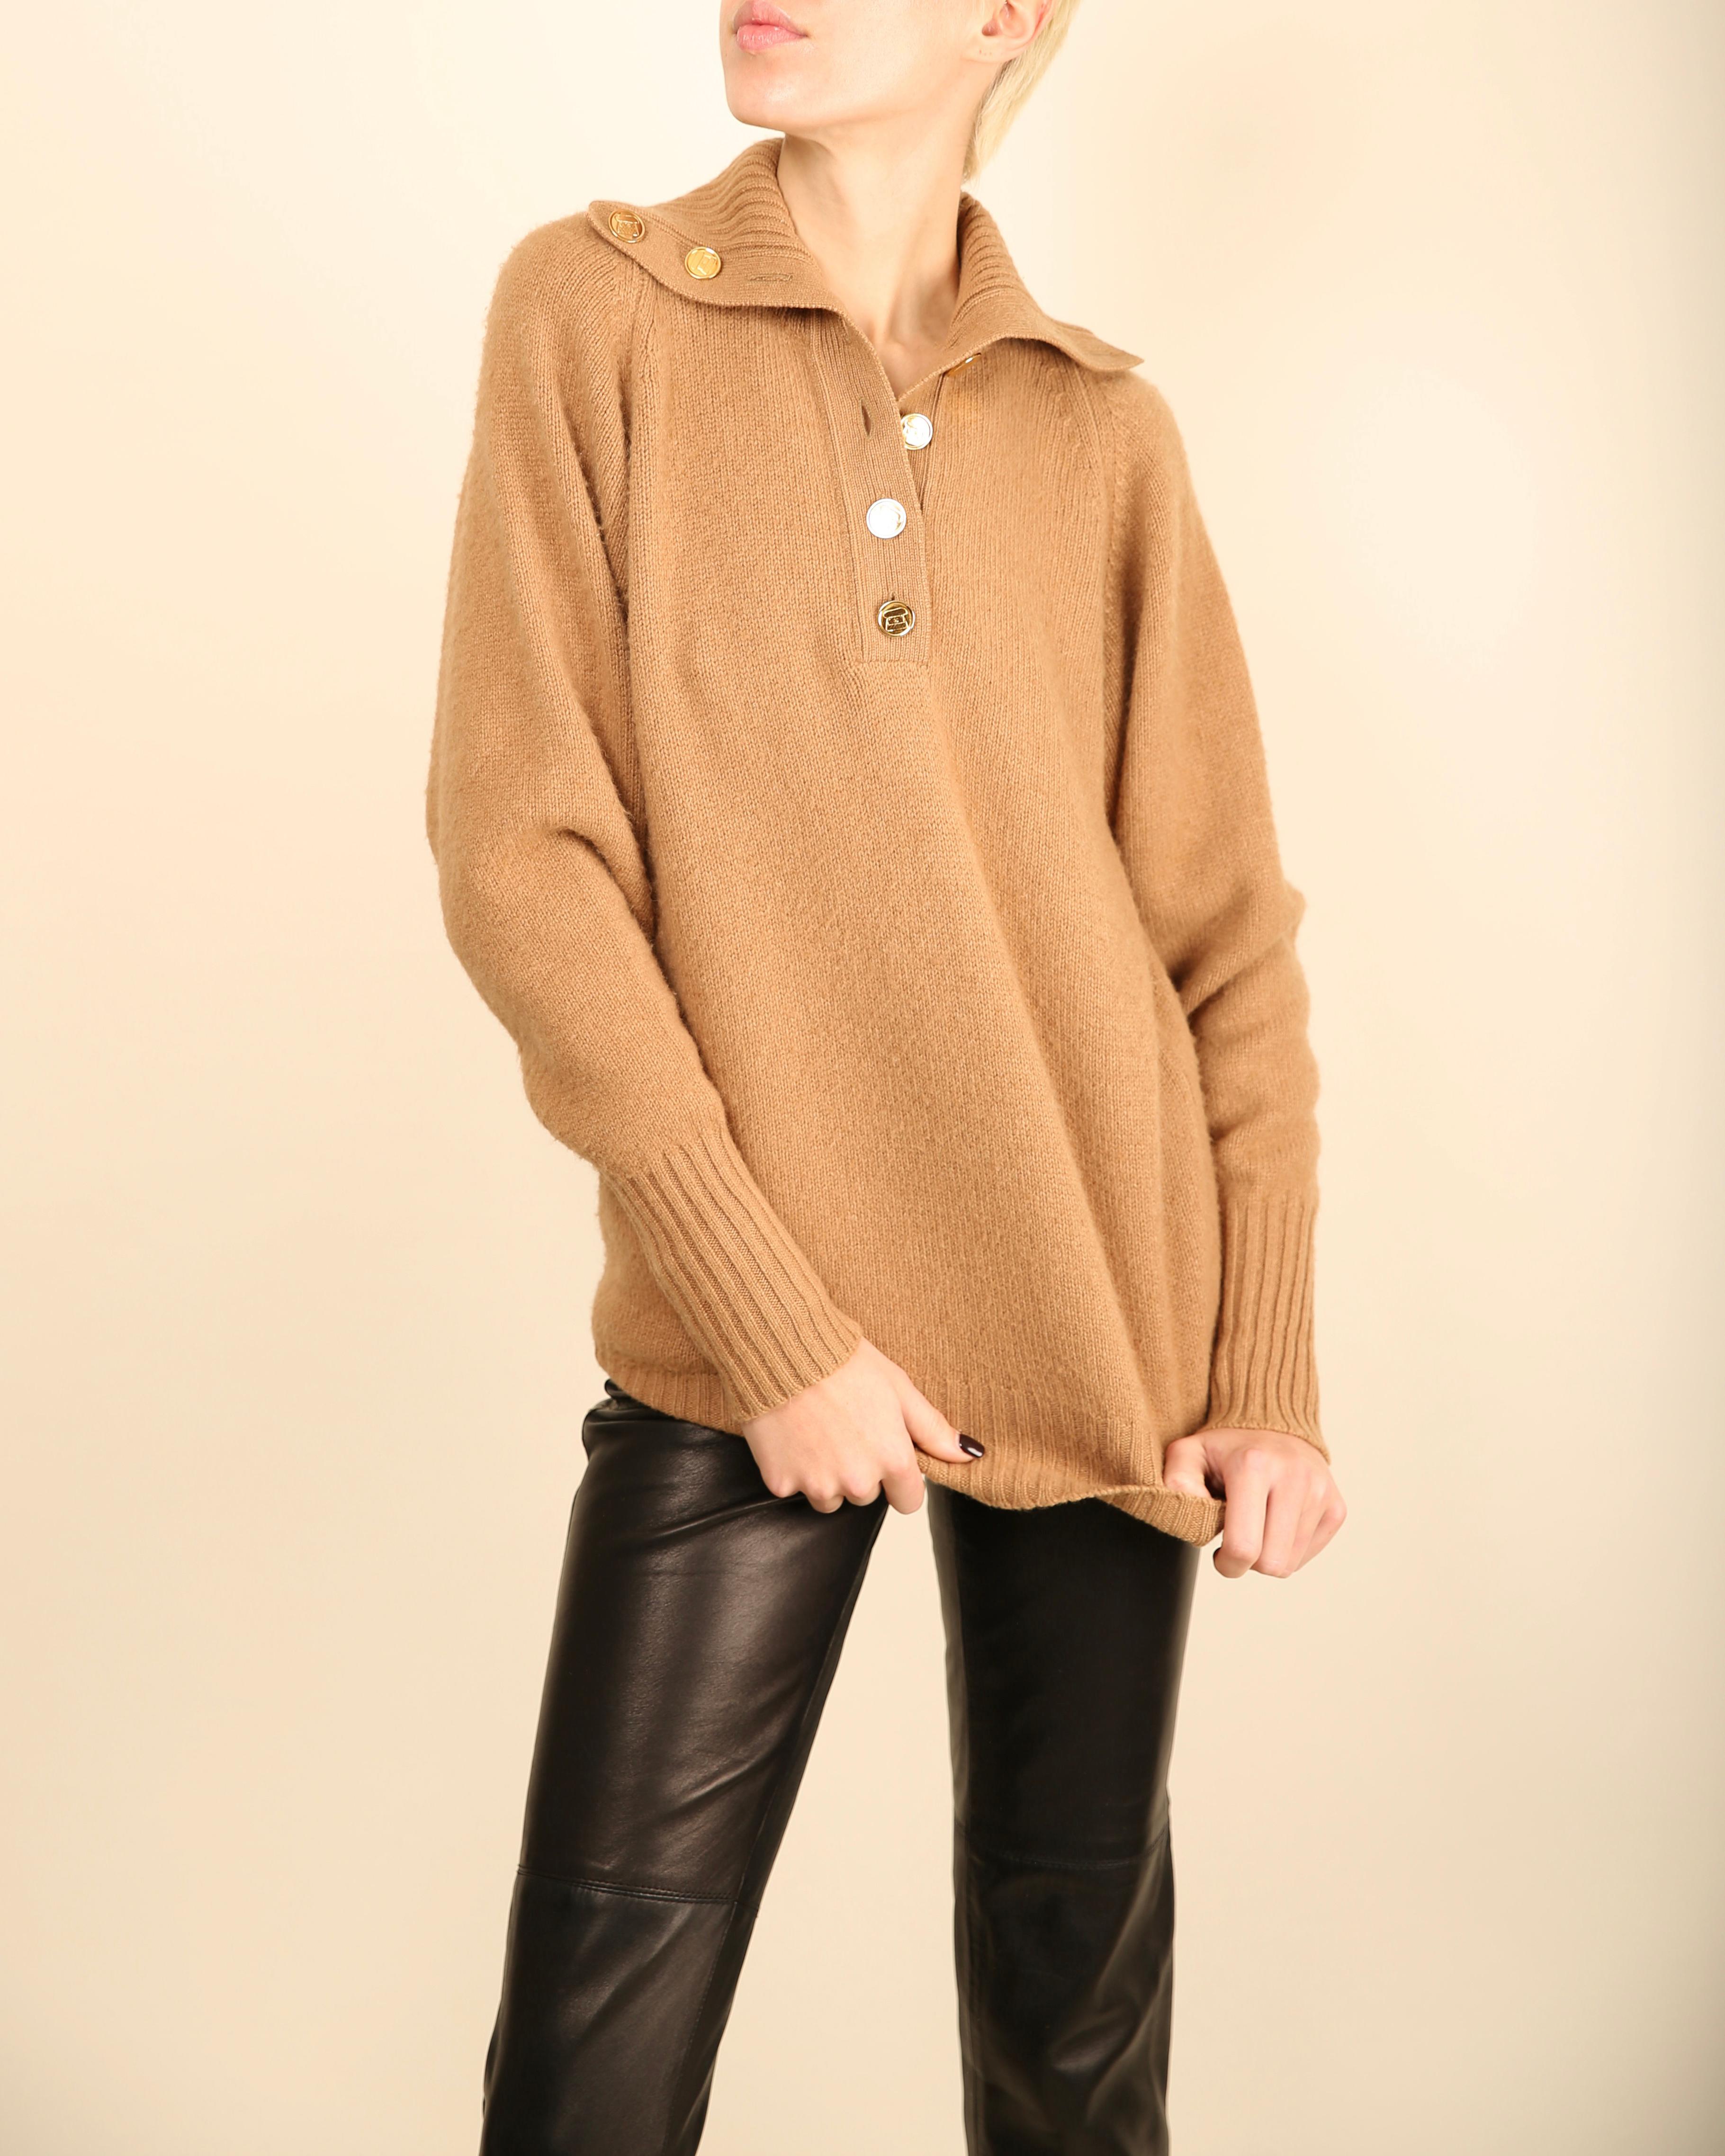 Chanel vtg tan camel beige turtleneck gold logo button cashmere dress sweater  For Sale 5